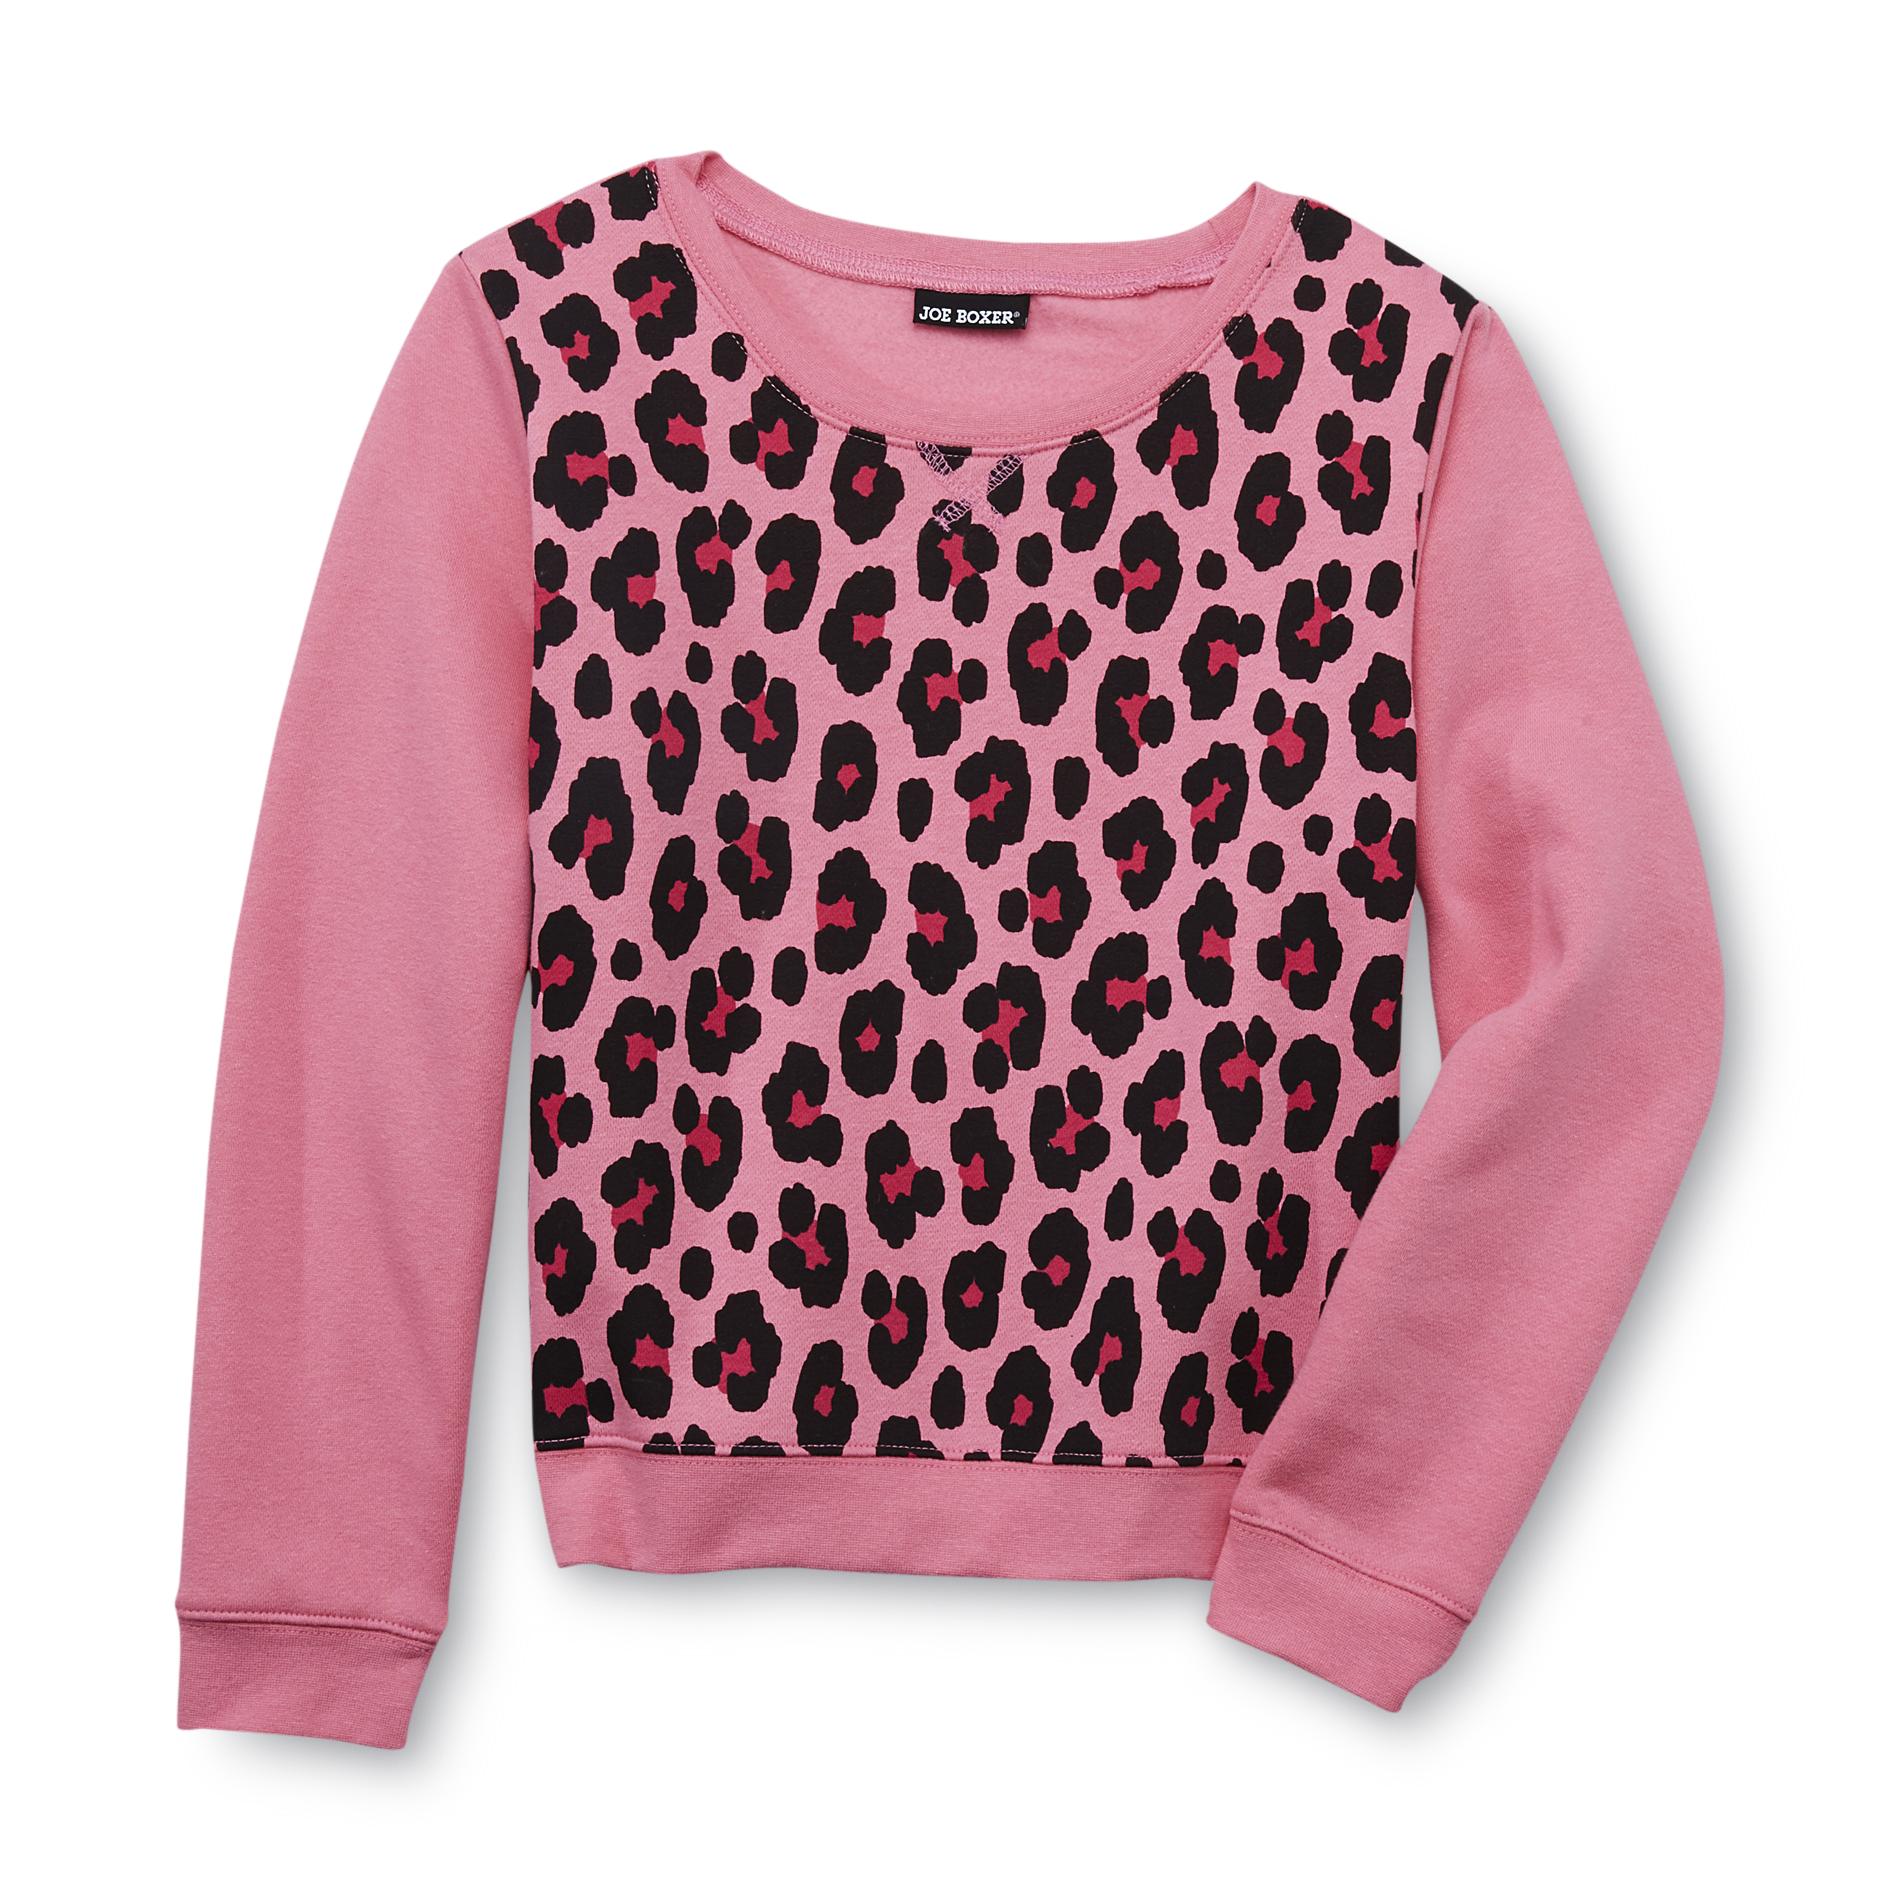 Joe Boxer Girl's Crew Neck Sweatshirt - Leopard Print